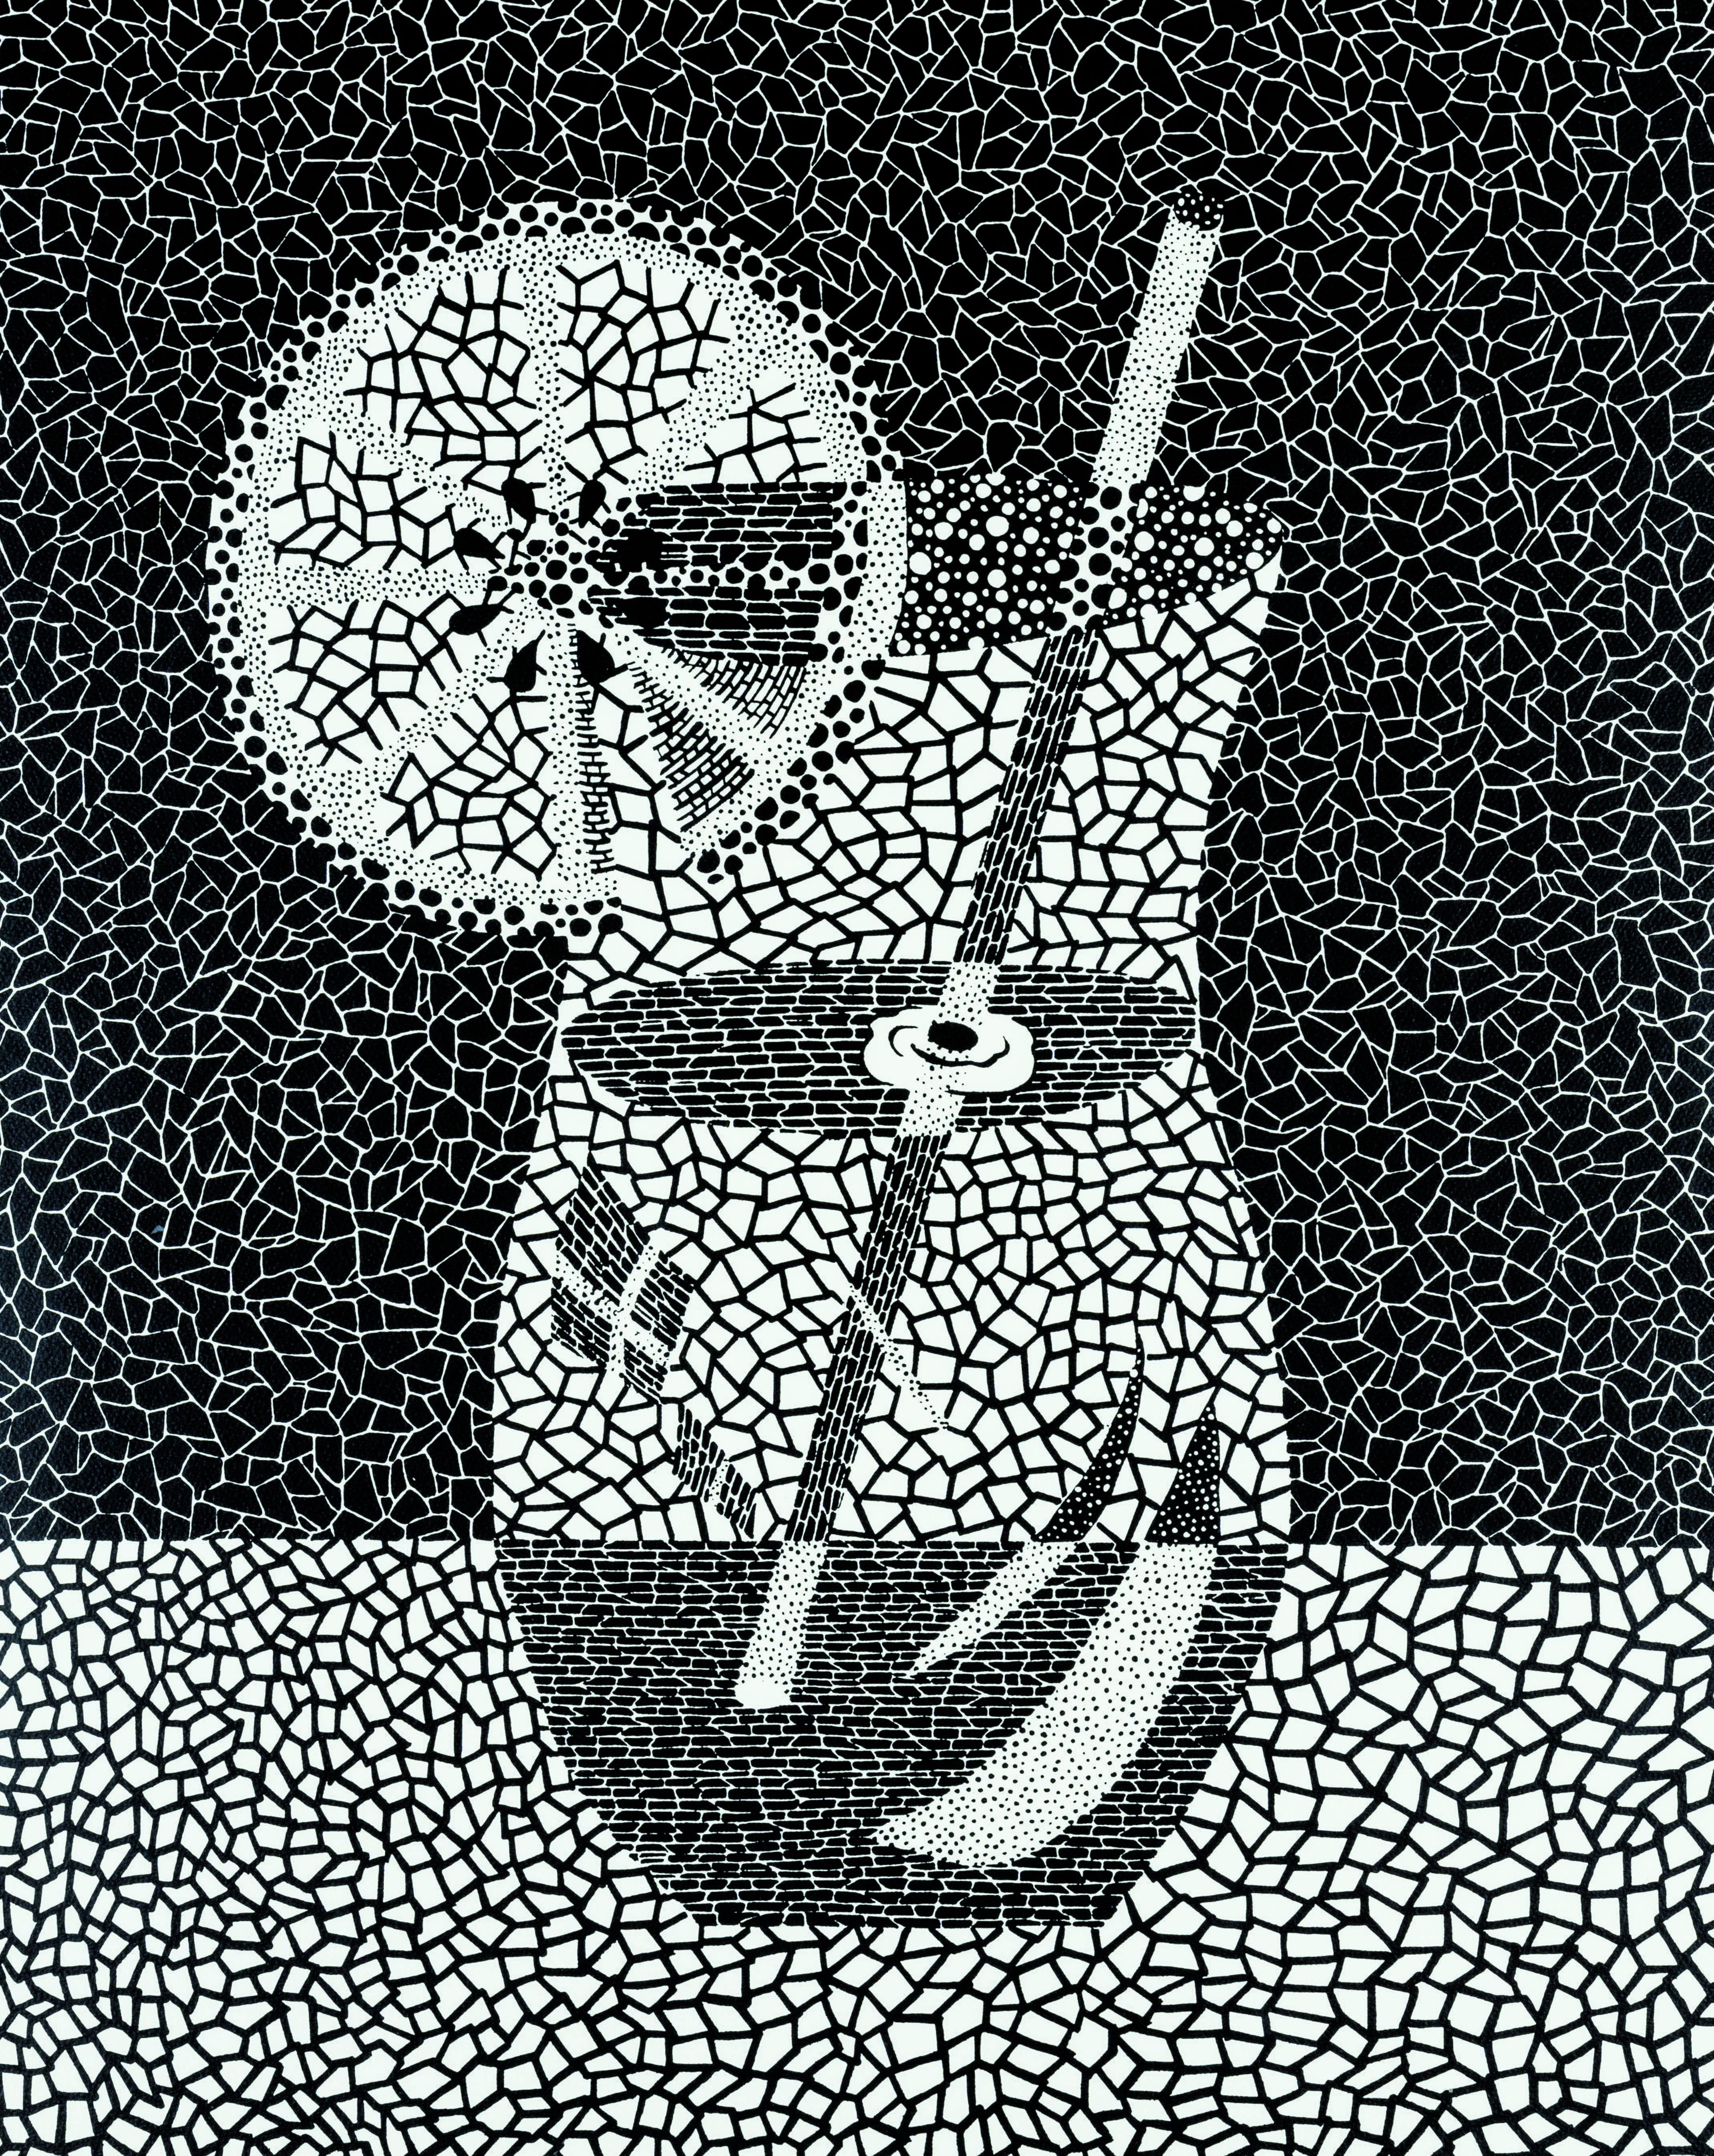 Yayoi Kusama 
Courge citronnée (1988). Edition 18/50
Sérigraphie
Signé, titré en japonais, daté et numéroté au crayon par l'artiste.
[3 écrans, 2 couleurs, 3 courses]
84,6 x 68 cm (image) 
97,5 x 79,3 cm  (feuille)
Edition de 50 + 5 épreuves